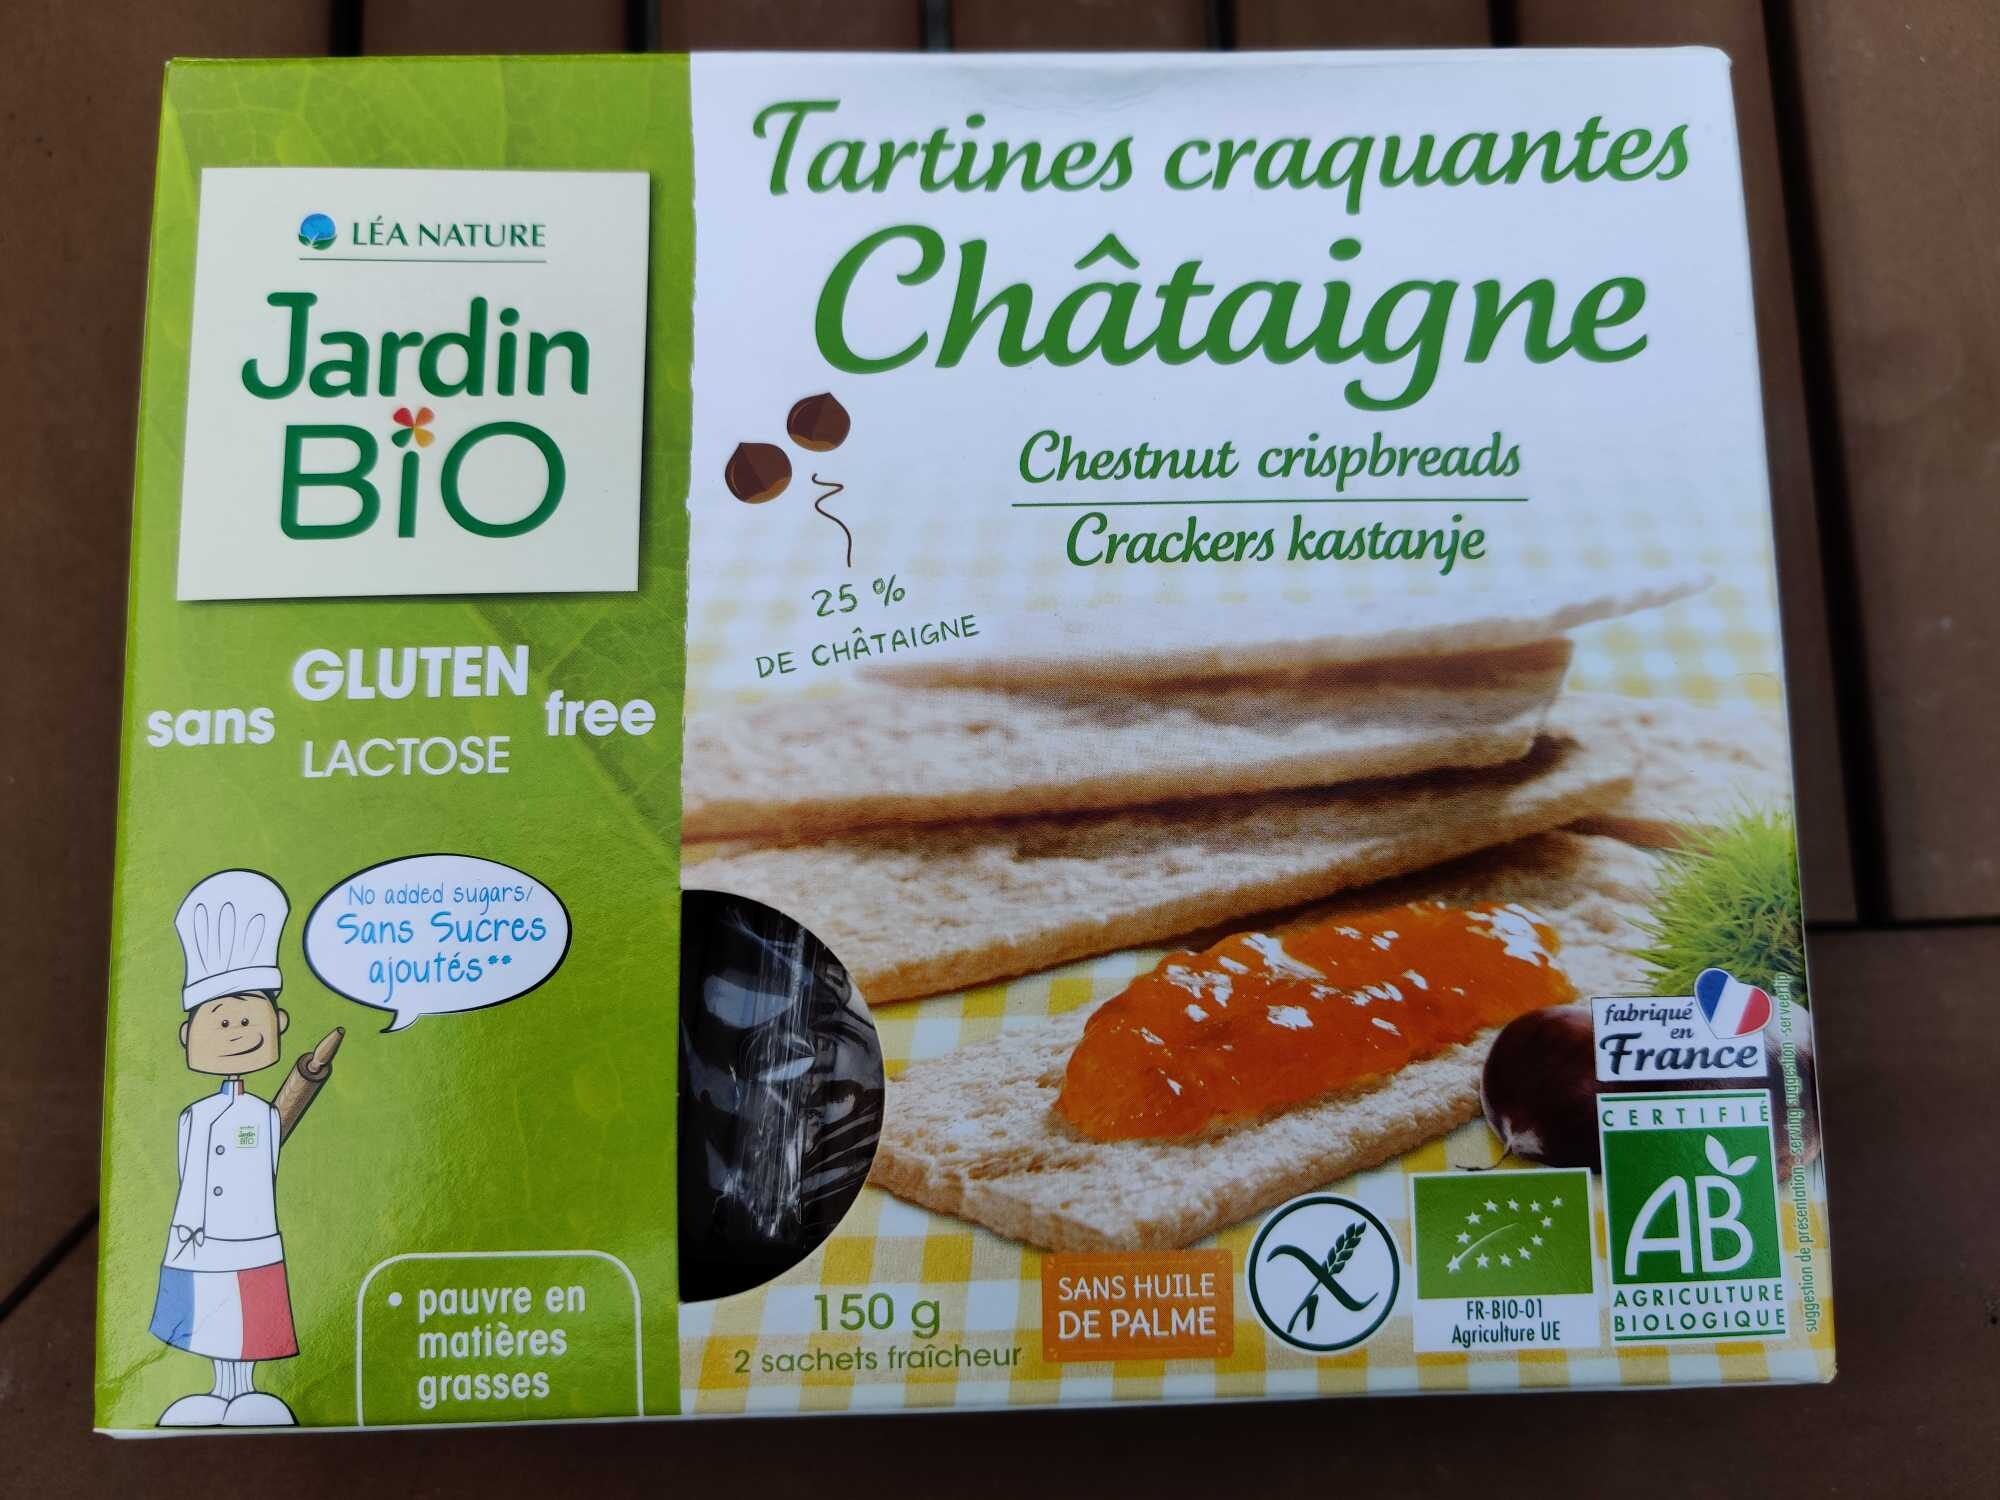 Tartines craquant es châtaigne - Продукт - fr